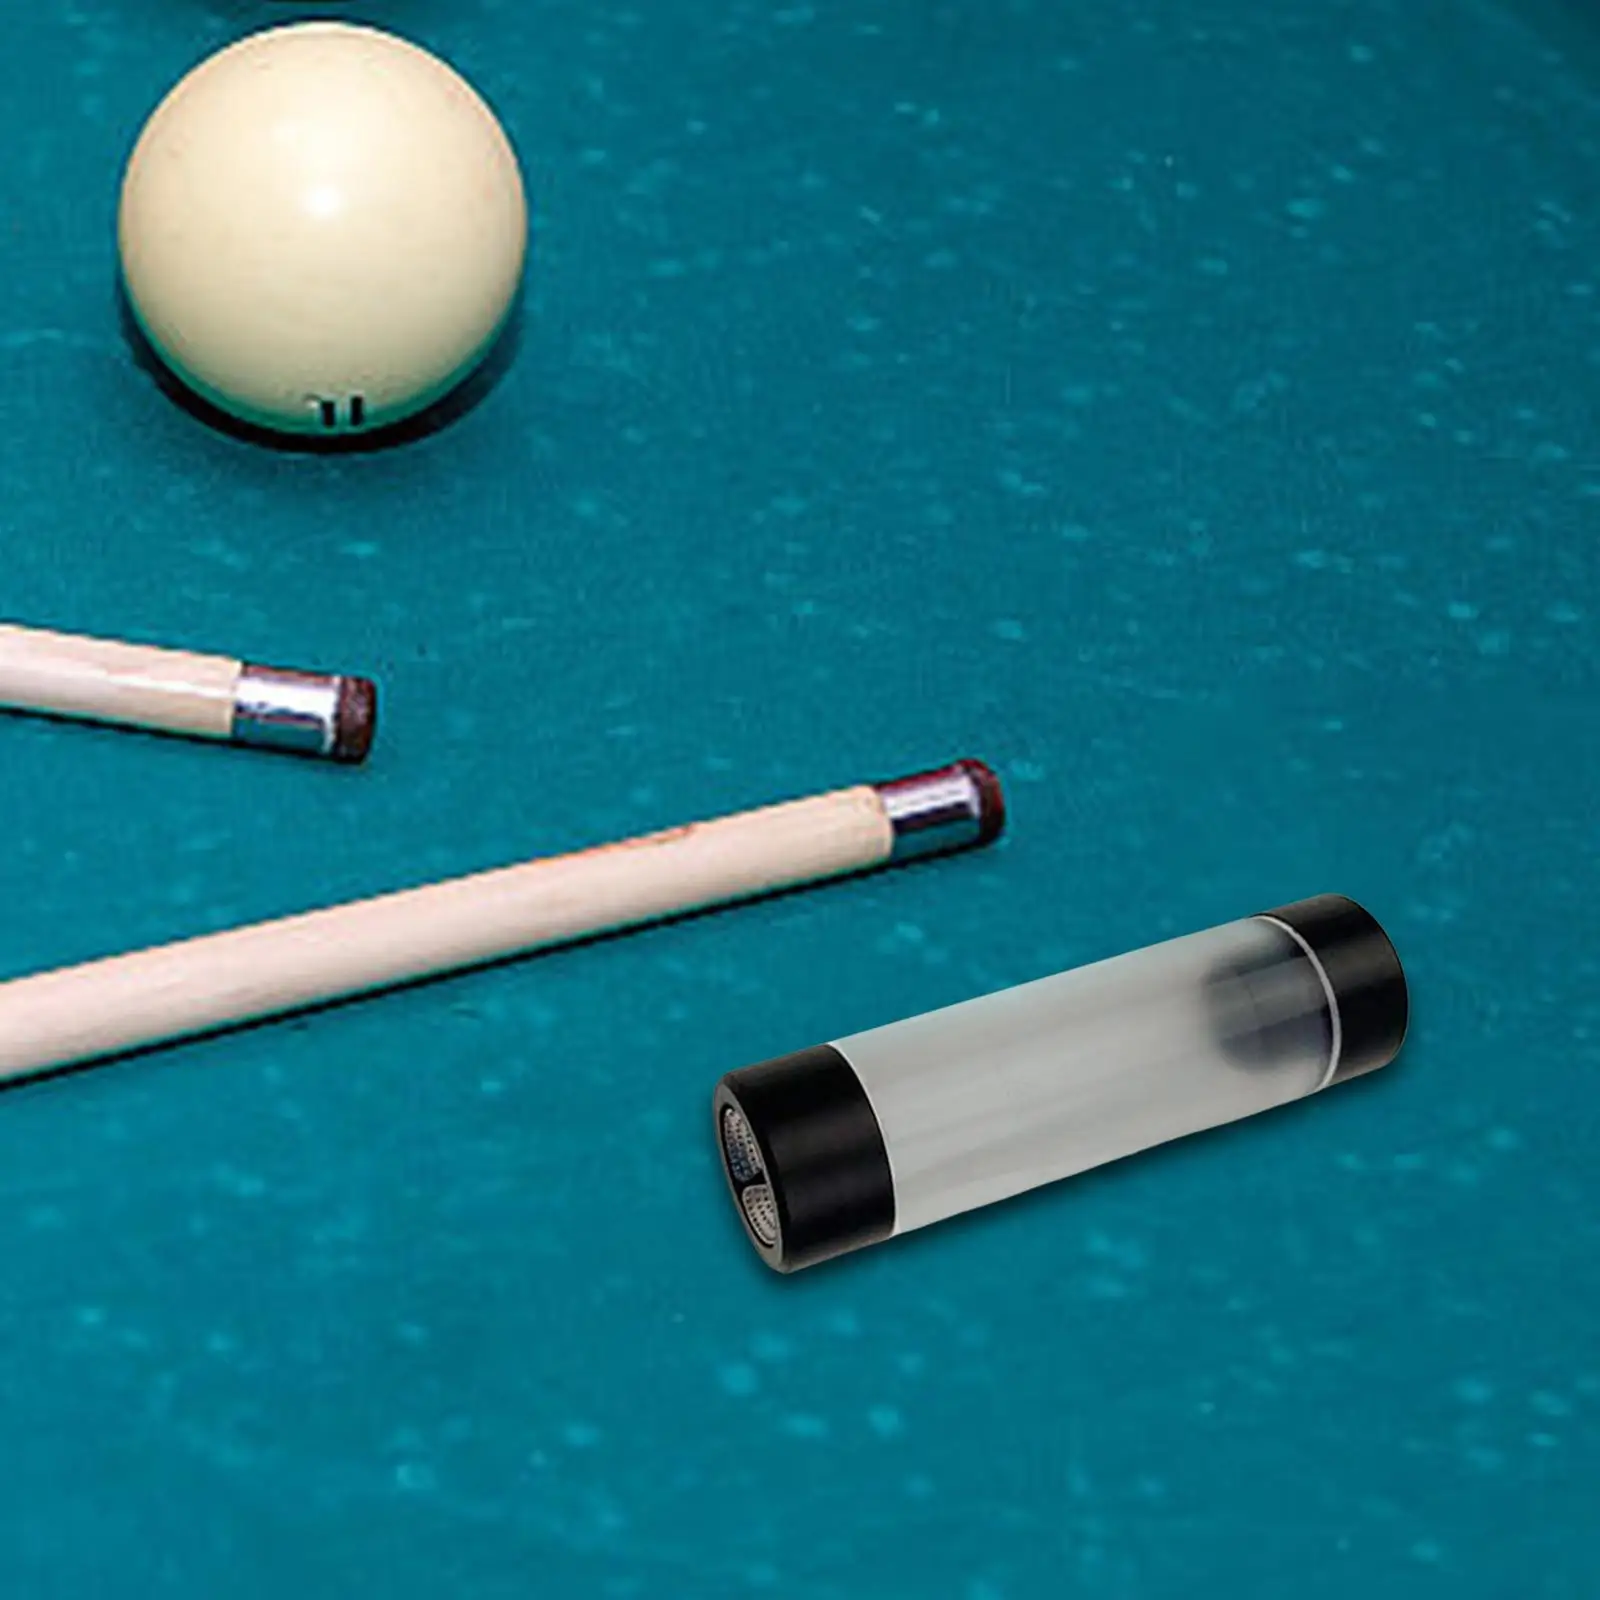 Billiard Pool Cue Tip Tool Premium Snooker Pool Cue Tip Shaper Grinder